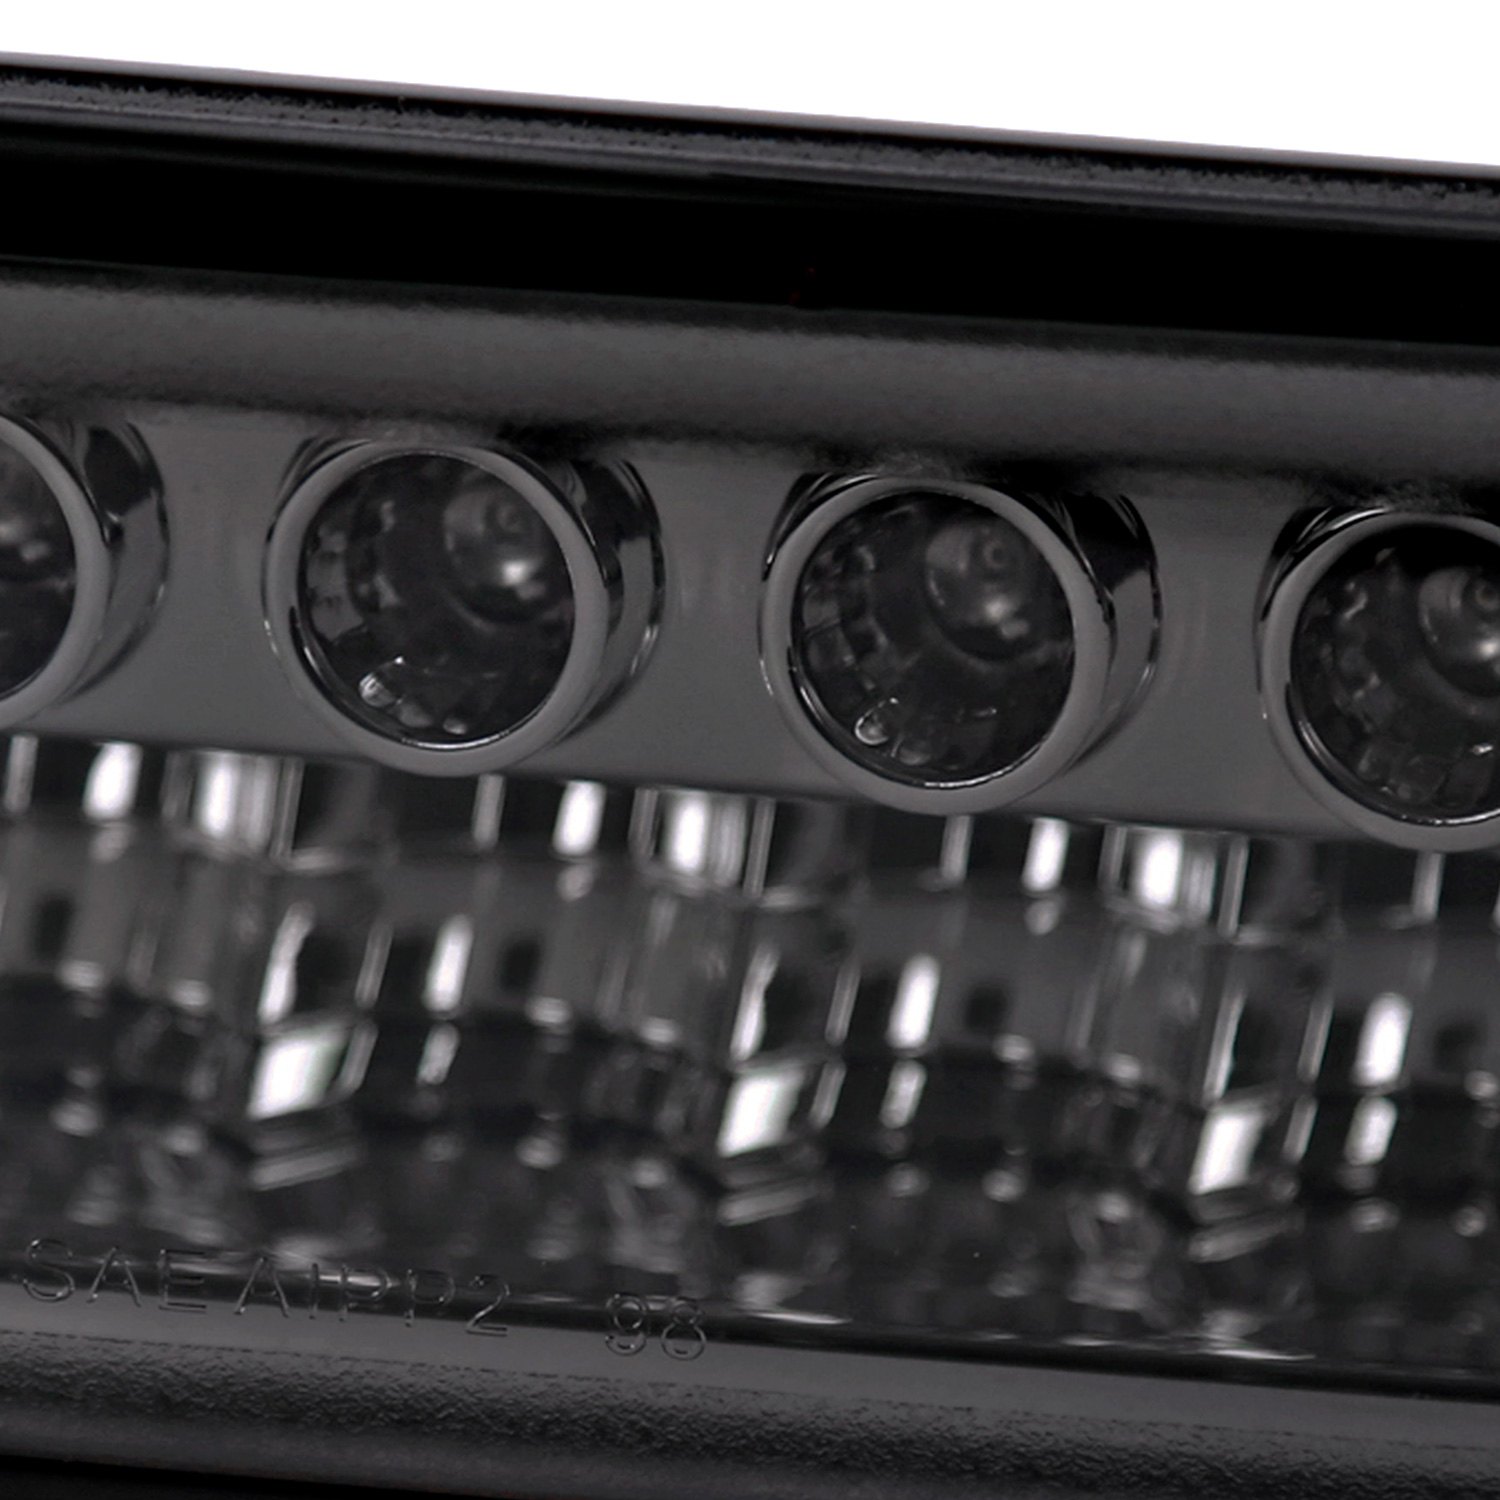 Spec D® 2lb S1098gled Rs Chrome Smoke Led Turn Signalparking Lights